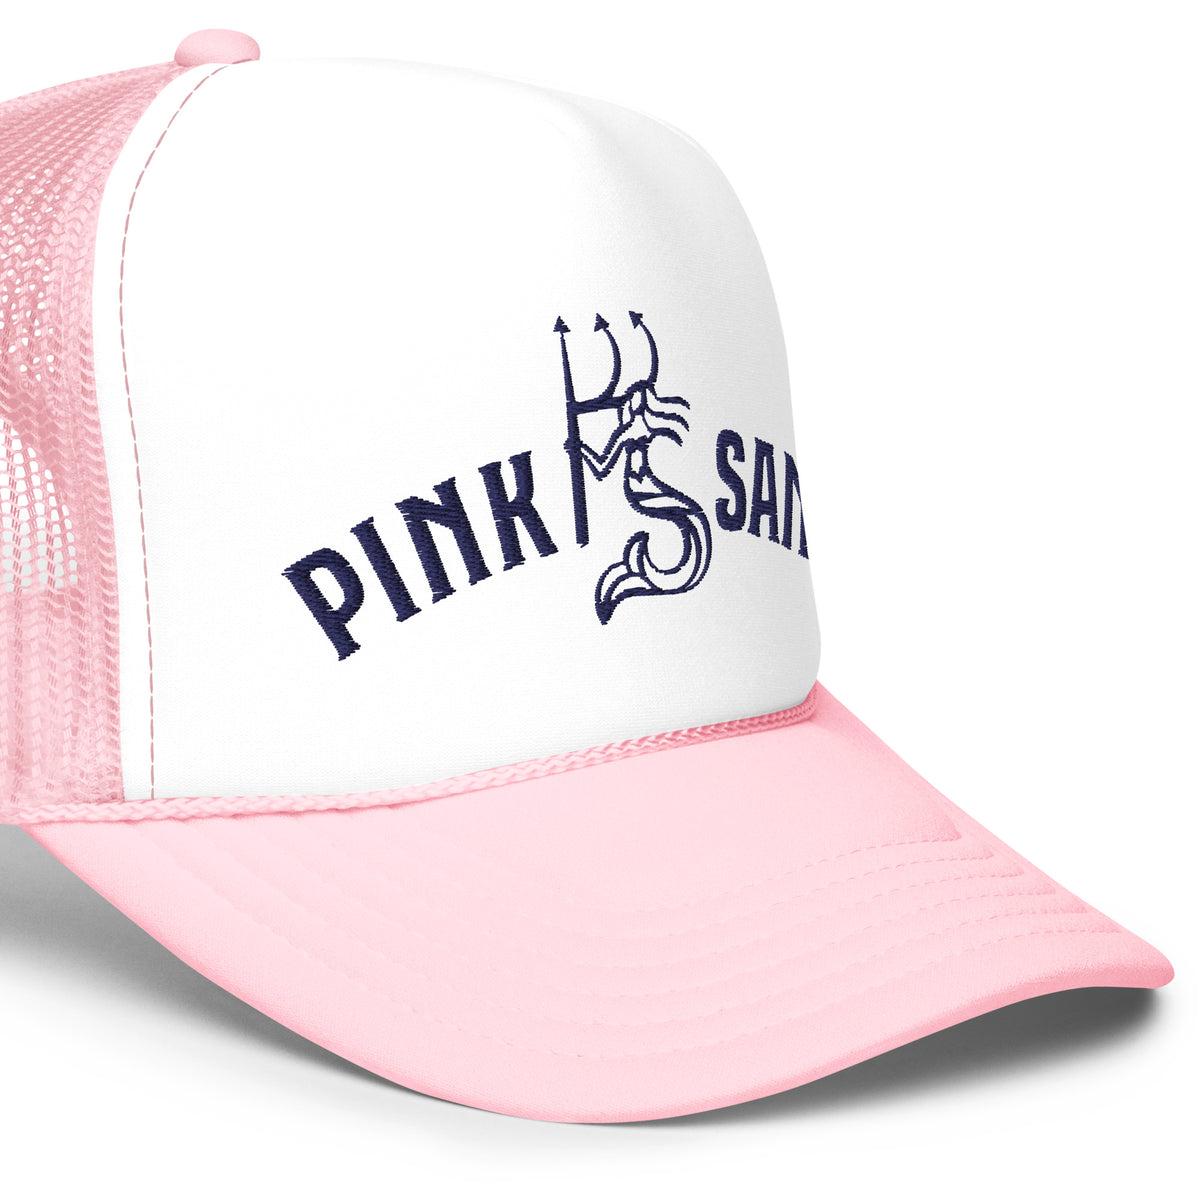 Pink Sand Trucker Hat